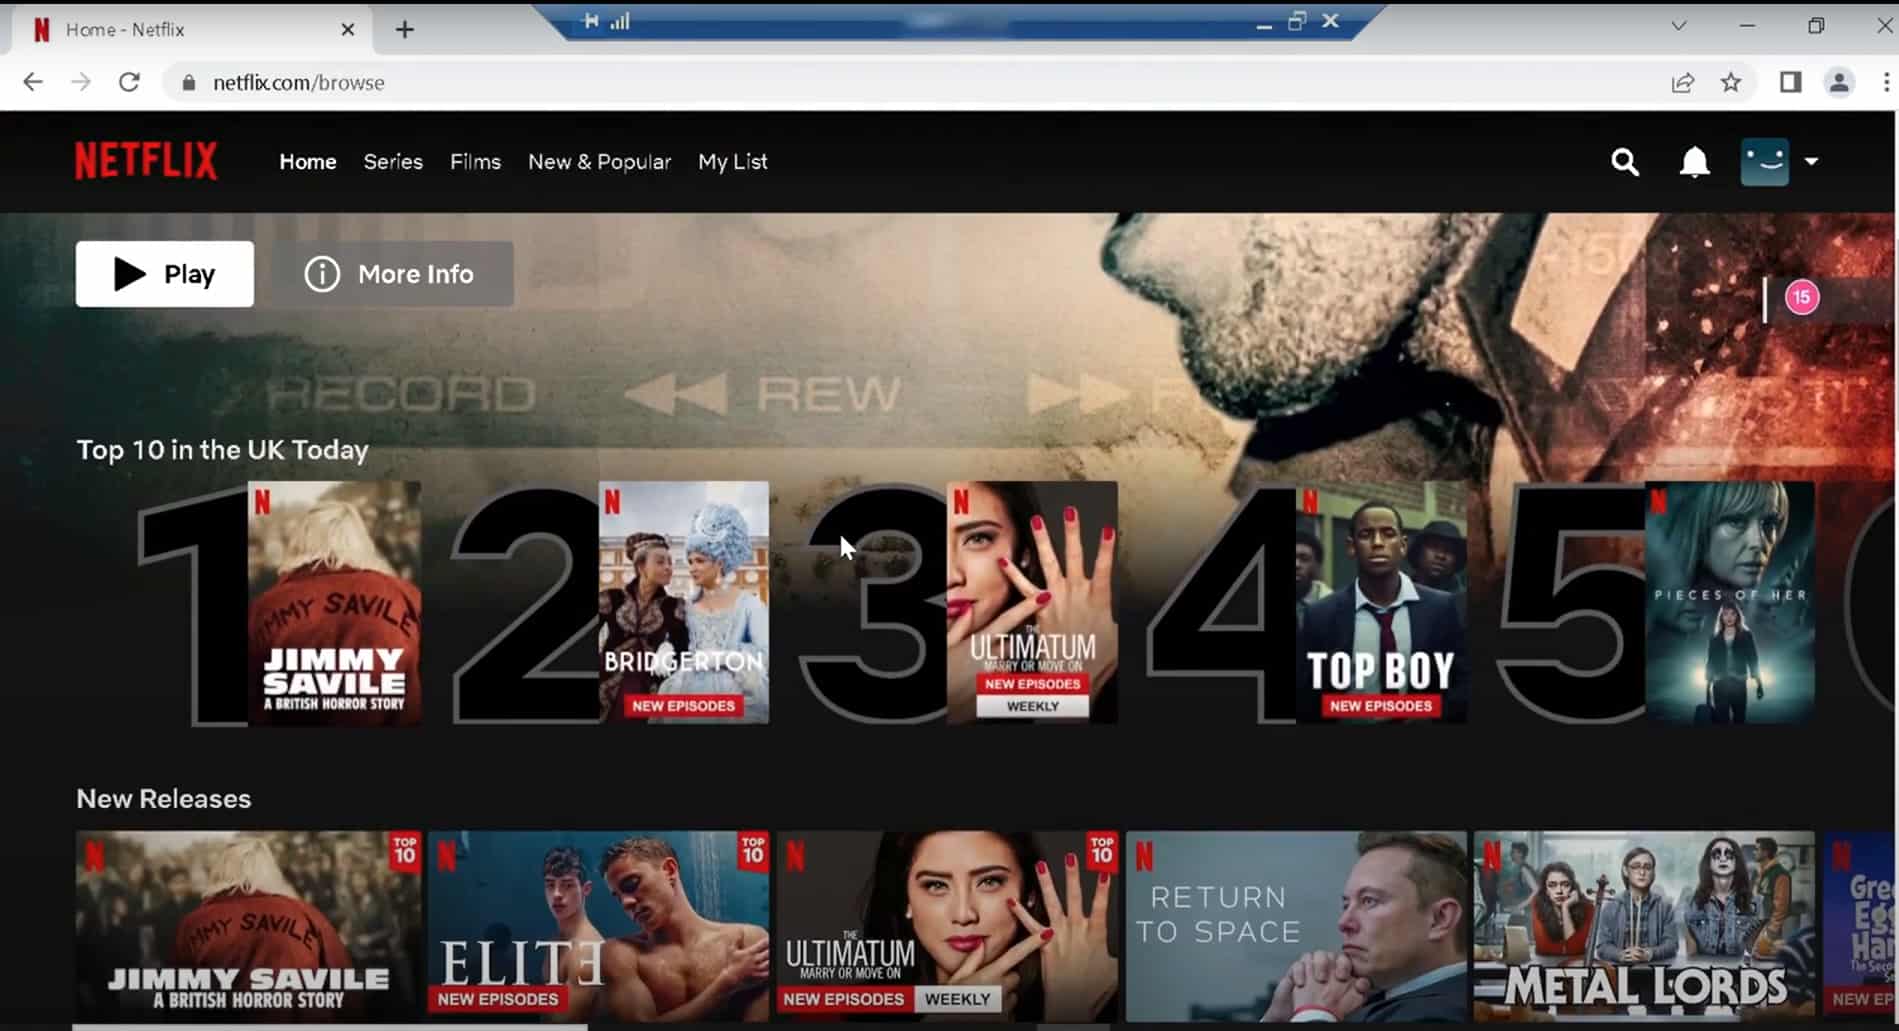 Netflix esconde filmes e séries? Veja como desbloquear códigos